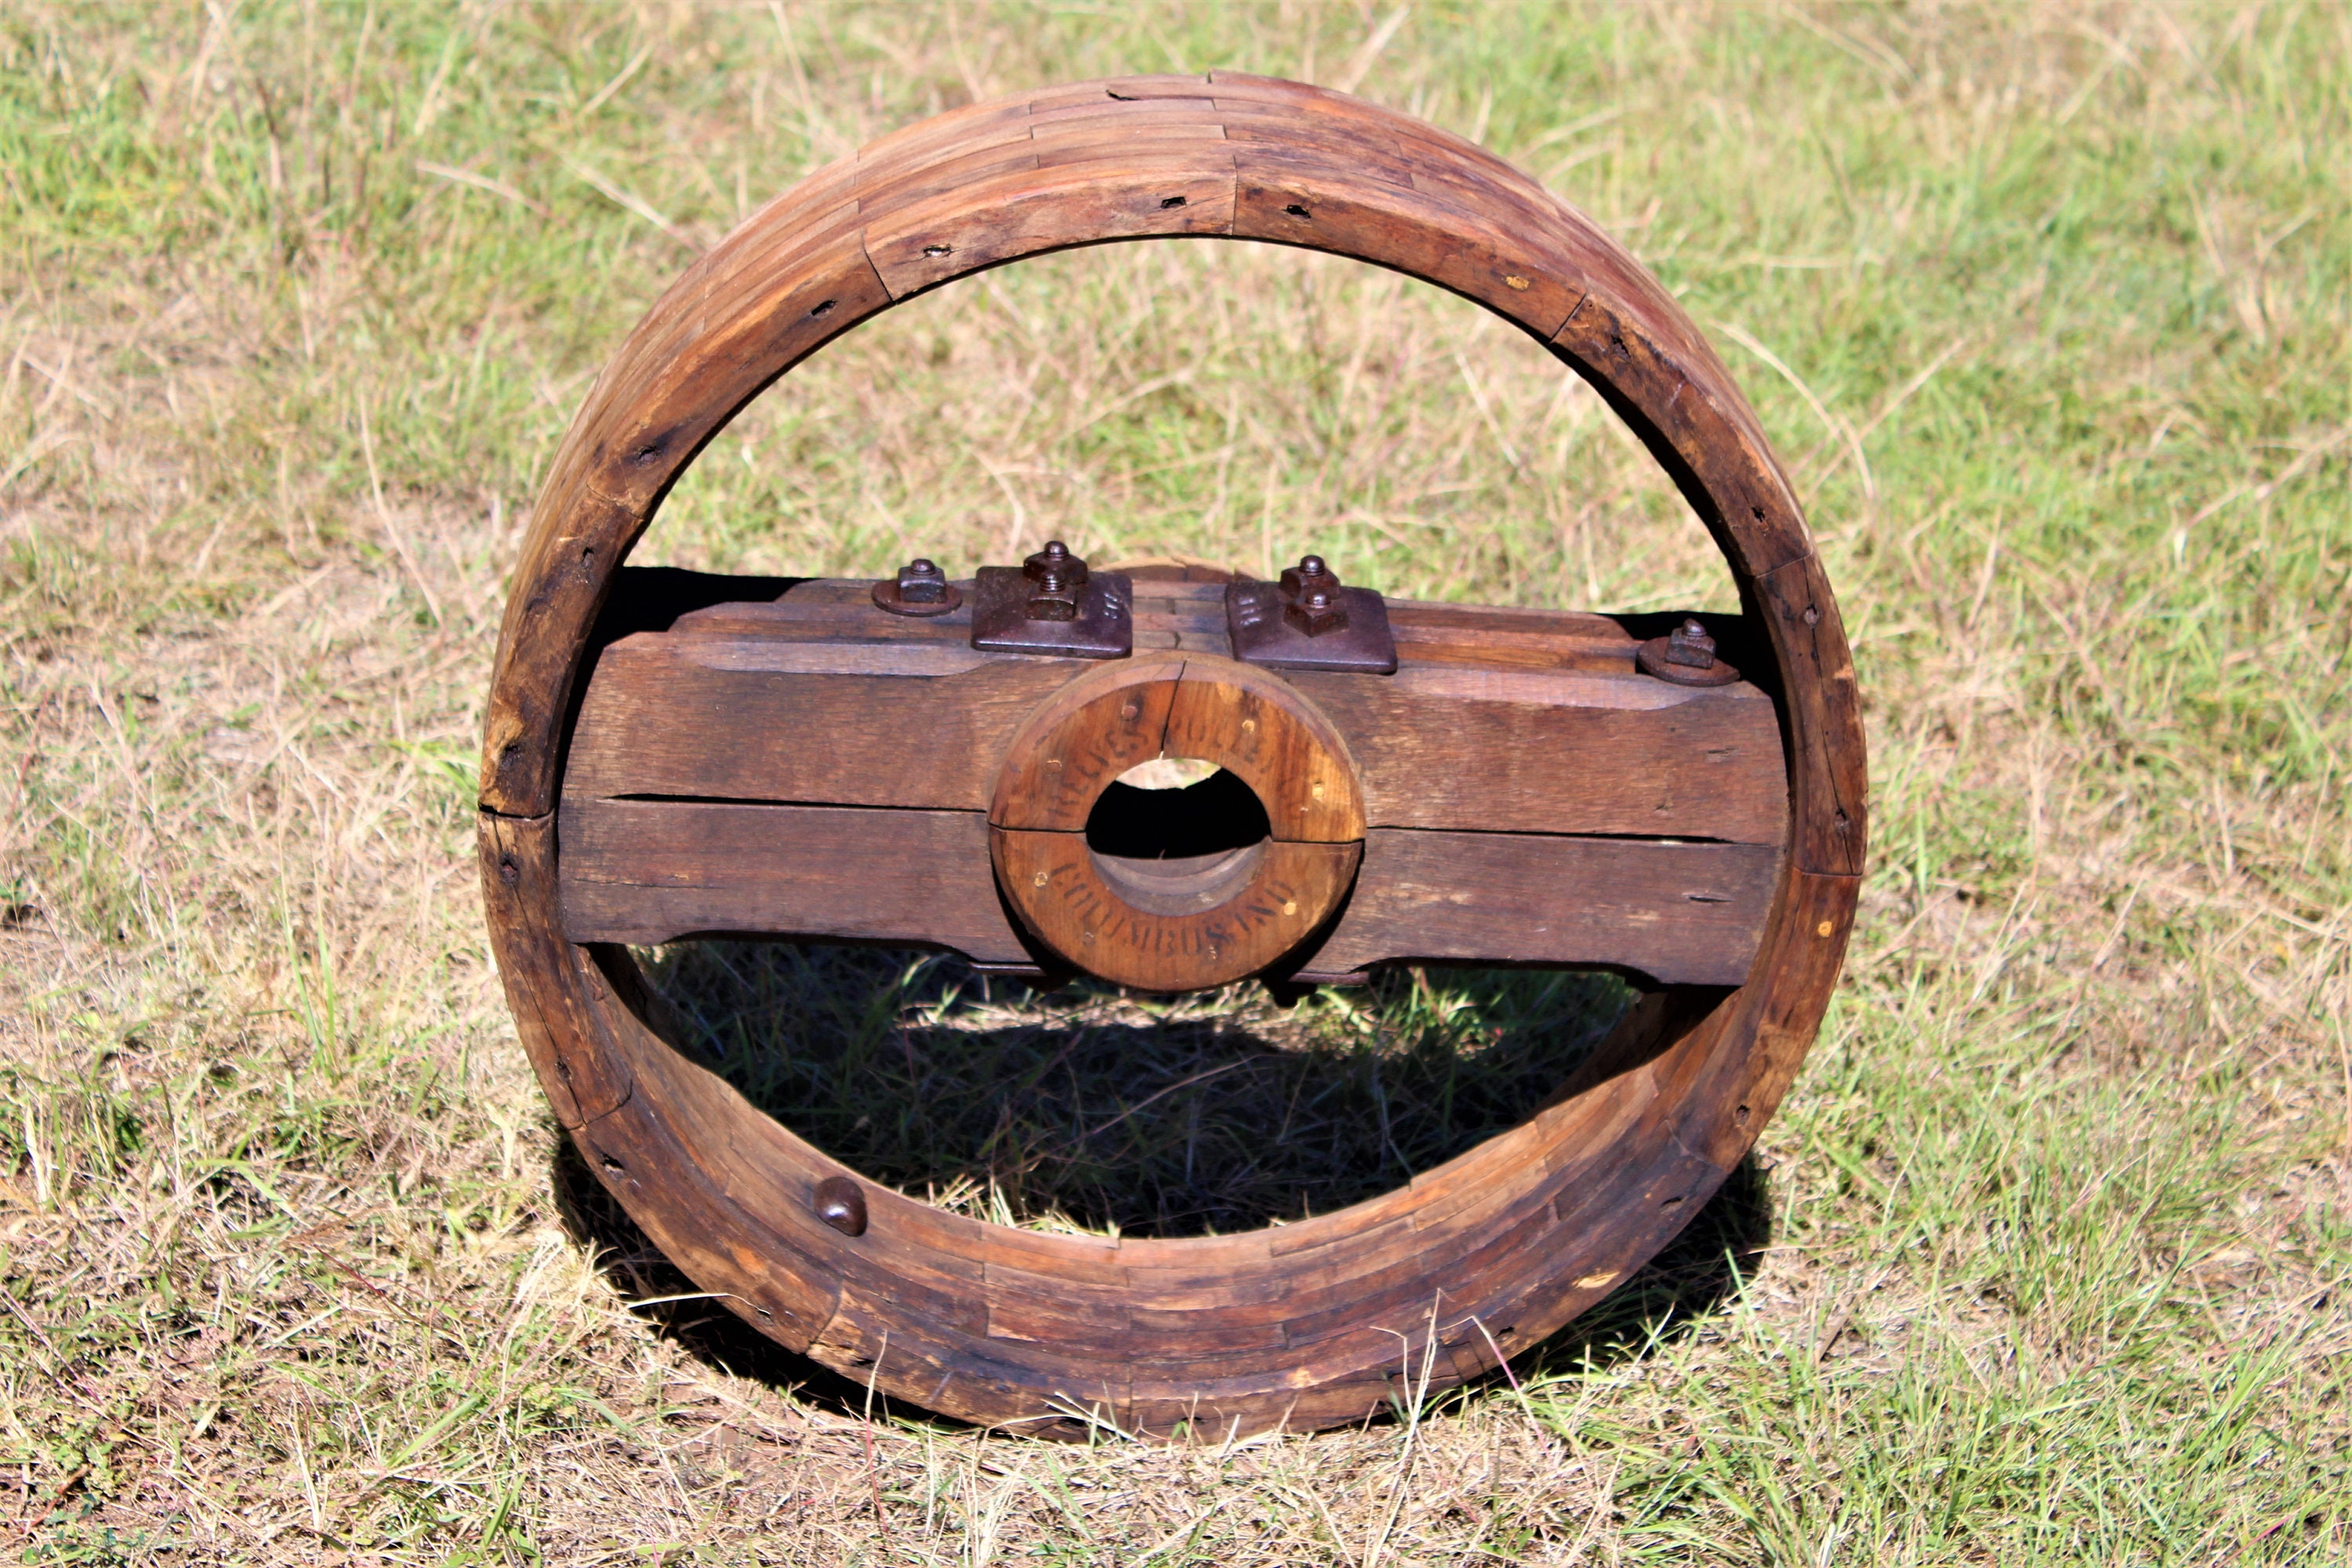 Antique 26" Reeves Wood Split Pulley Wheel, Flat Belt Pulley